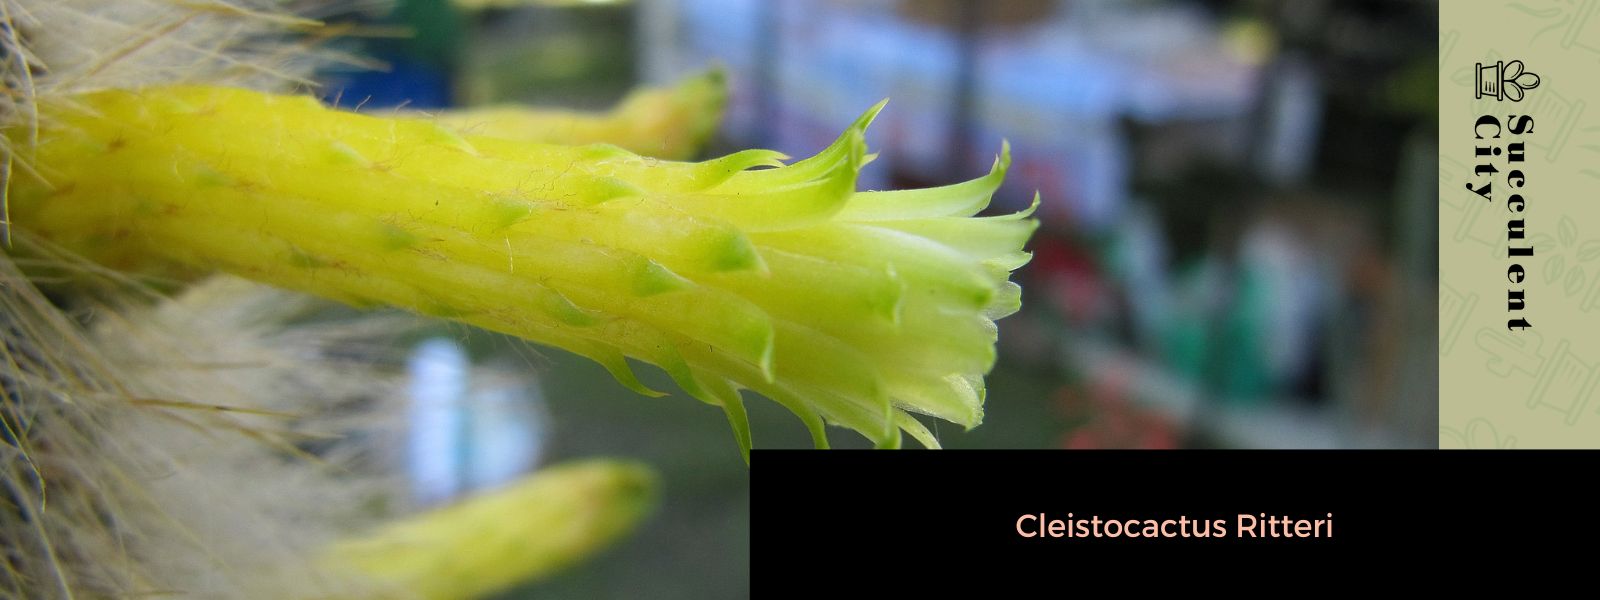 Cleistocactus Ritteri